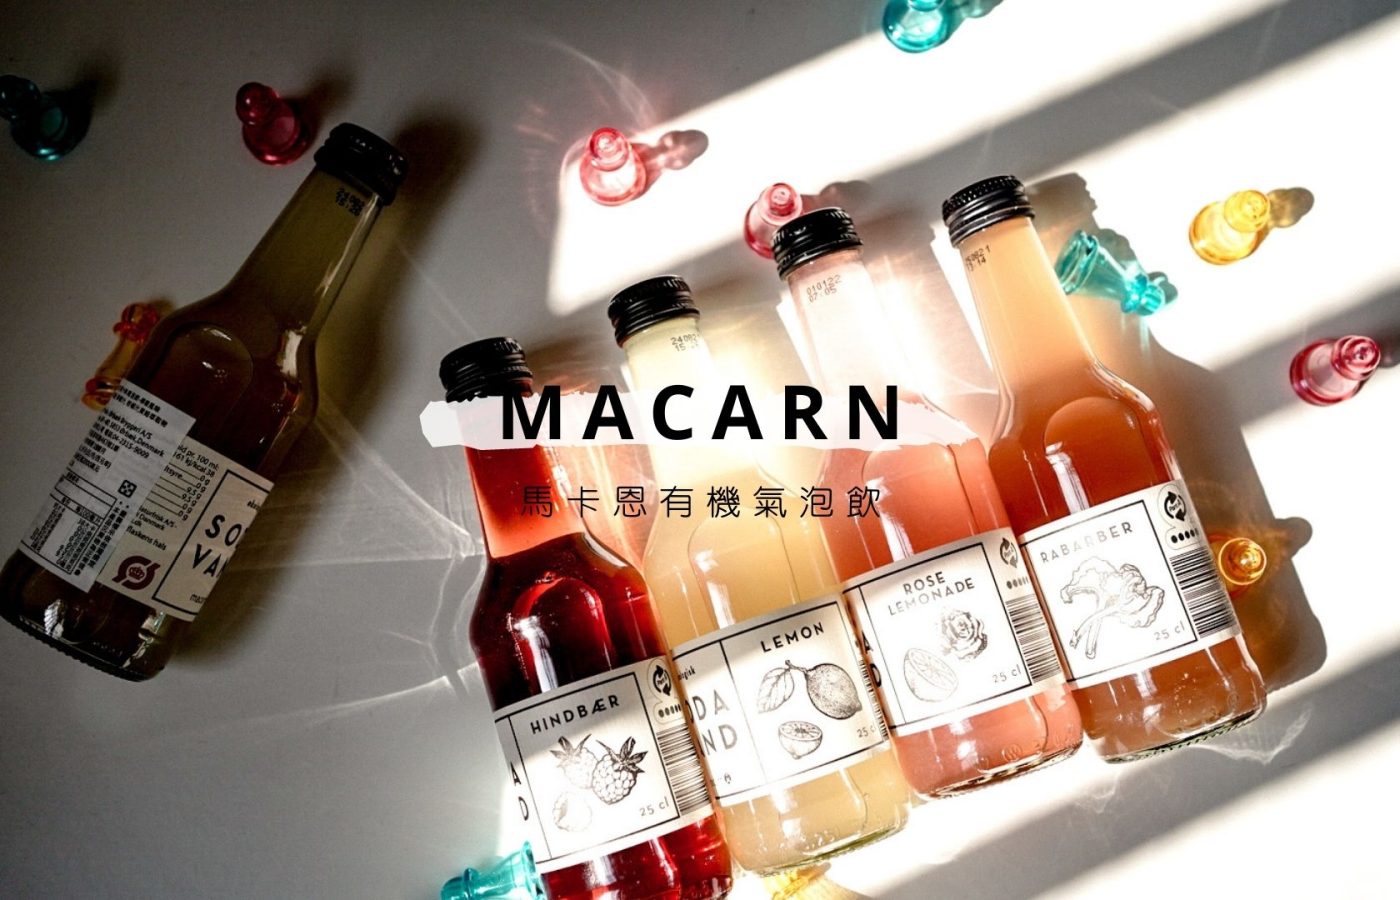 Macarn馬卡恩有機果汁氣泡飲.有機, 氣泡飲, 果汁, 丹麥, 金牌獎, 調酒搭配, 無添加